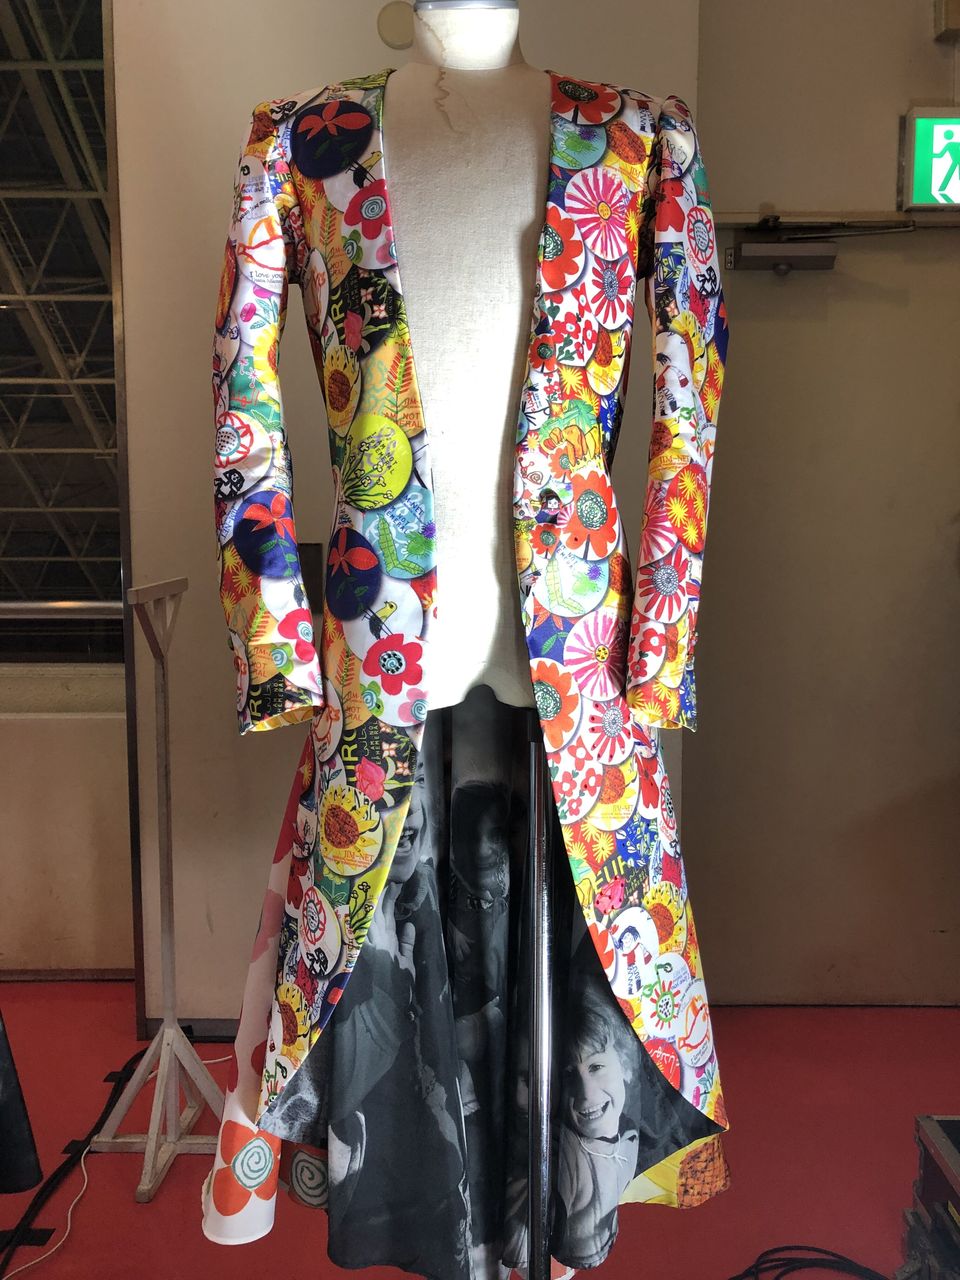 Sugizoさんが50歳記念ライブでイラクの子どもたちの絵のジャケットを作ってくださいました Jim Net ジムネット 公式サイト